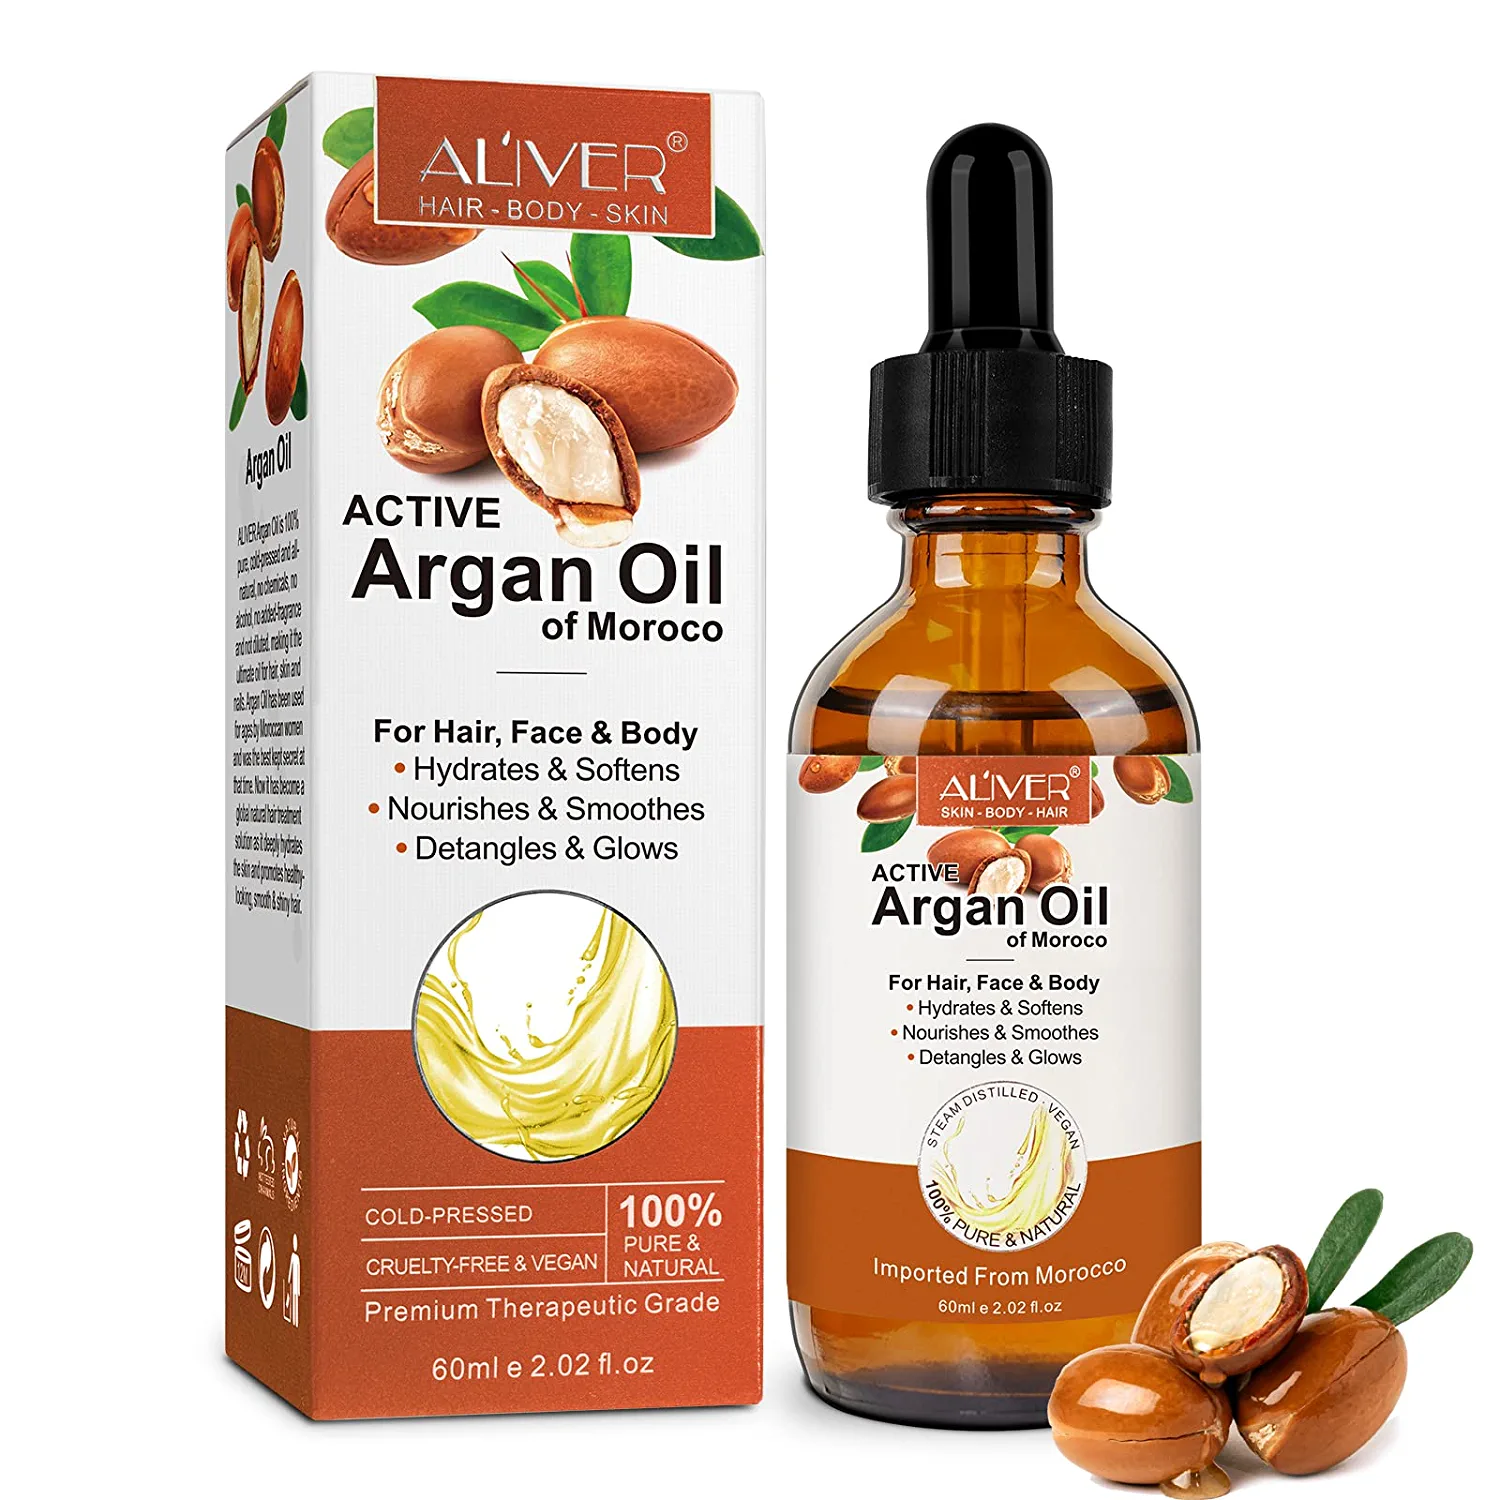 xayghe Morocco Active Arganöl für Haar, Skin, Nägel, Arganöl zum Reparieren und Nähren der Haare, Stärkung der Haarwurzeln, reduziert Spliss